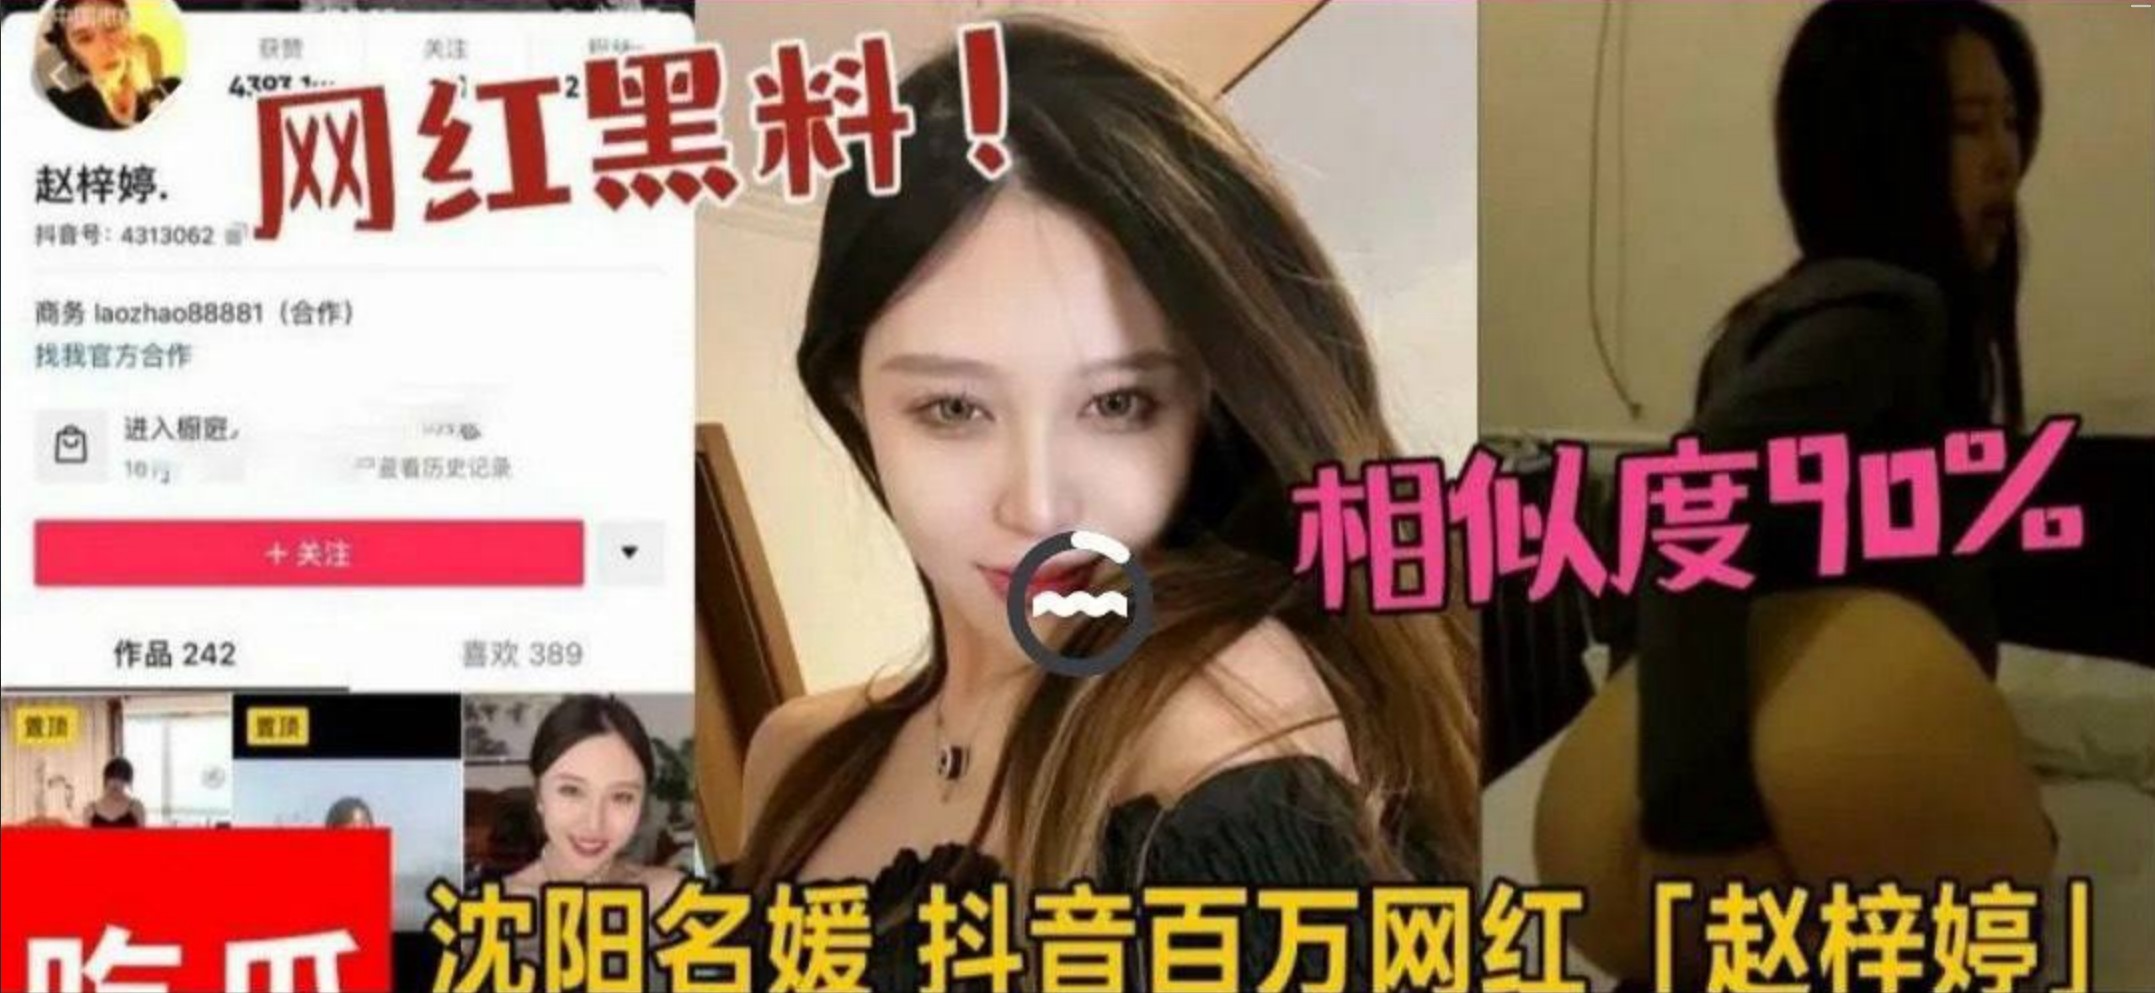 Trang xã hội Thẩm Dương "Zhao Ziting", một triệu phú Douyin nổi tiếng trên mạng với ngoại hình đẹp, đã bị nhà tài trợ của cô kéo tóc và cưỡng hiếp một cách thô bạo!